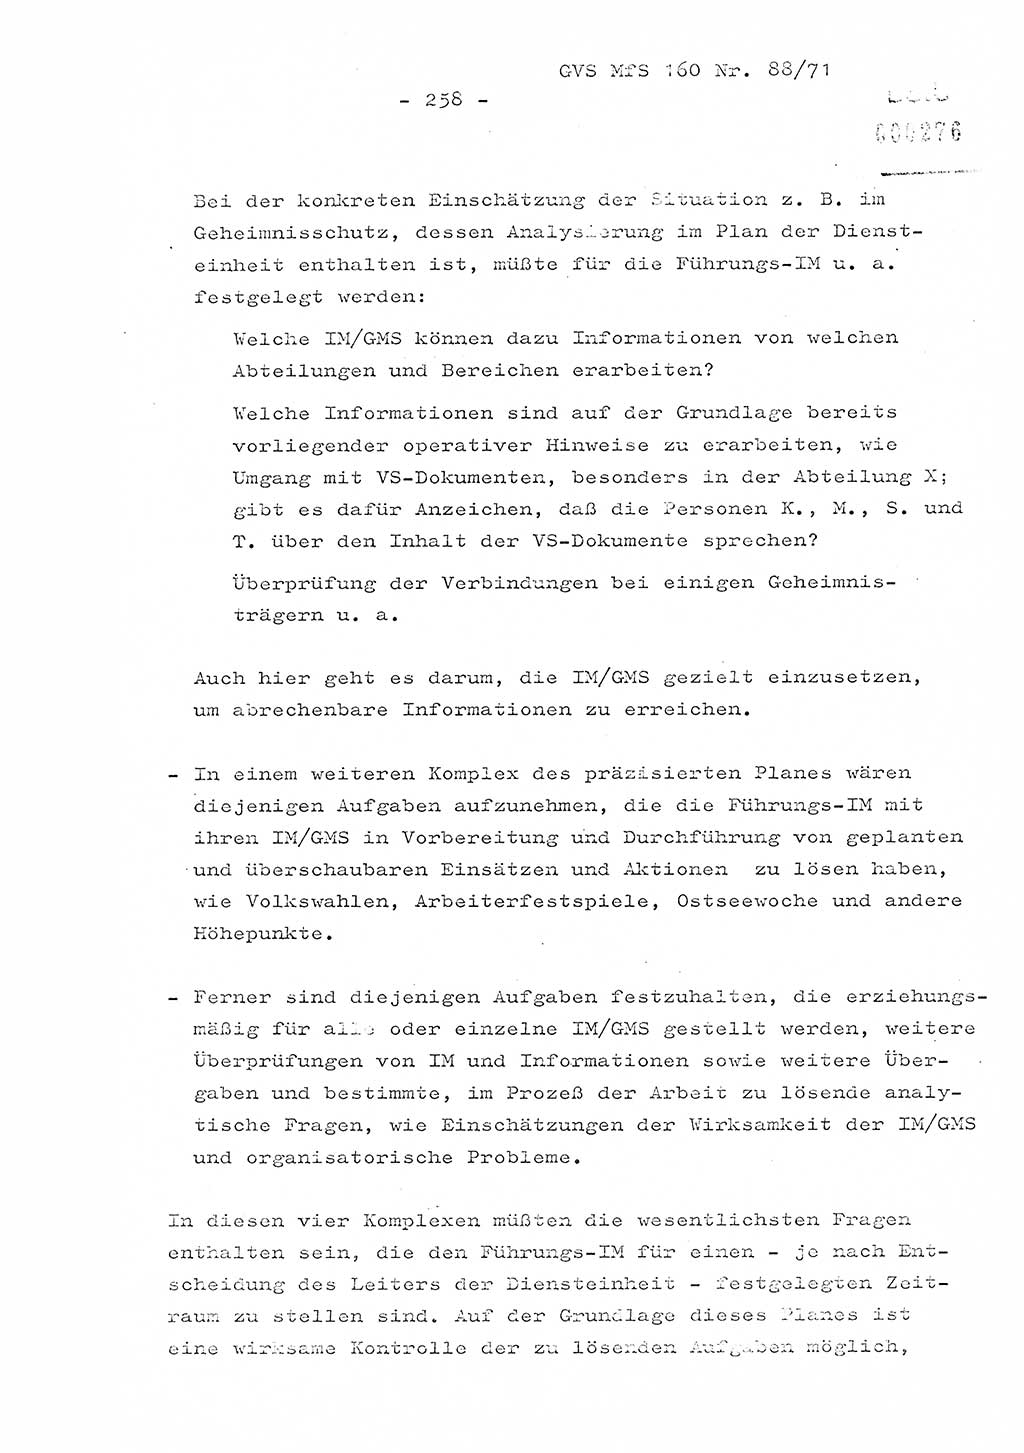 Dissertation Oberstleutnant Josef Schwarz (BV Schwerin), Major Fritz Amm (JHS), Hauptmann Peter Gräßler (JHS), Ministerium für Staatssicherheit (MfS) [Deutsche Demokratische Republik (DDR)], Juristische Hochschule (JHS), Geheime Verschlußsache (GVS) 160-88/71, Potsdam 1972, Seite 258 (Diss. MfS DDR JHS GVS 160-88/71 1972, S. 258)